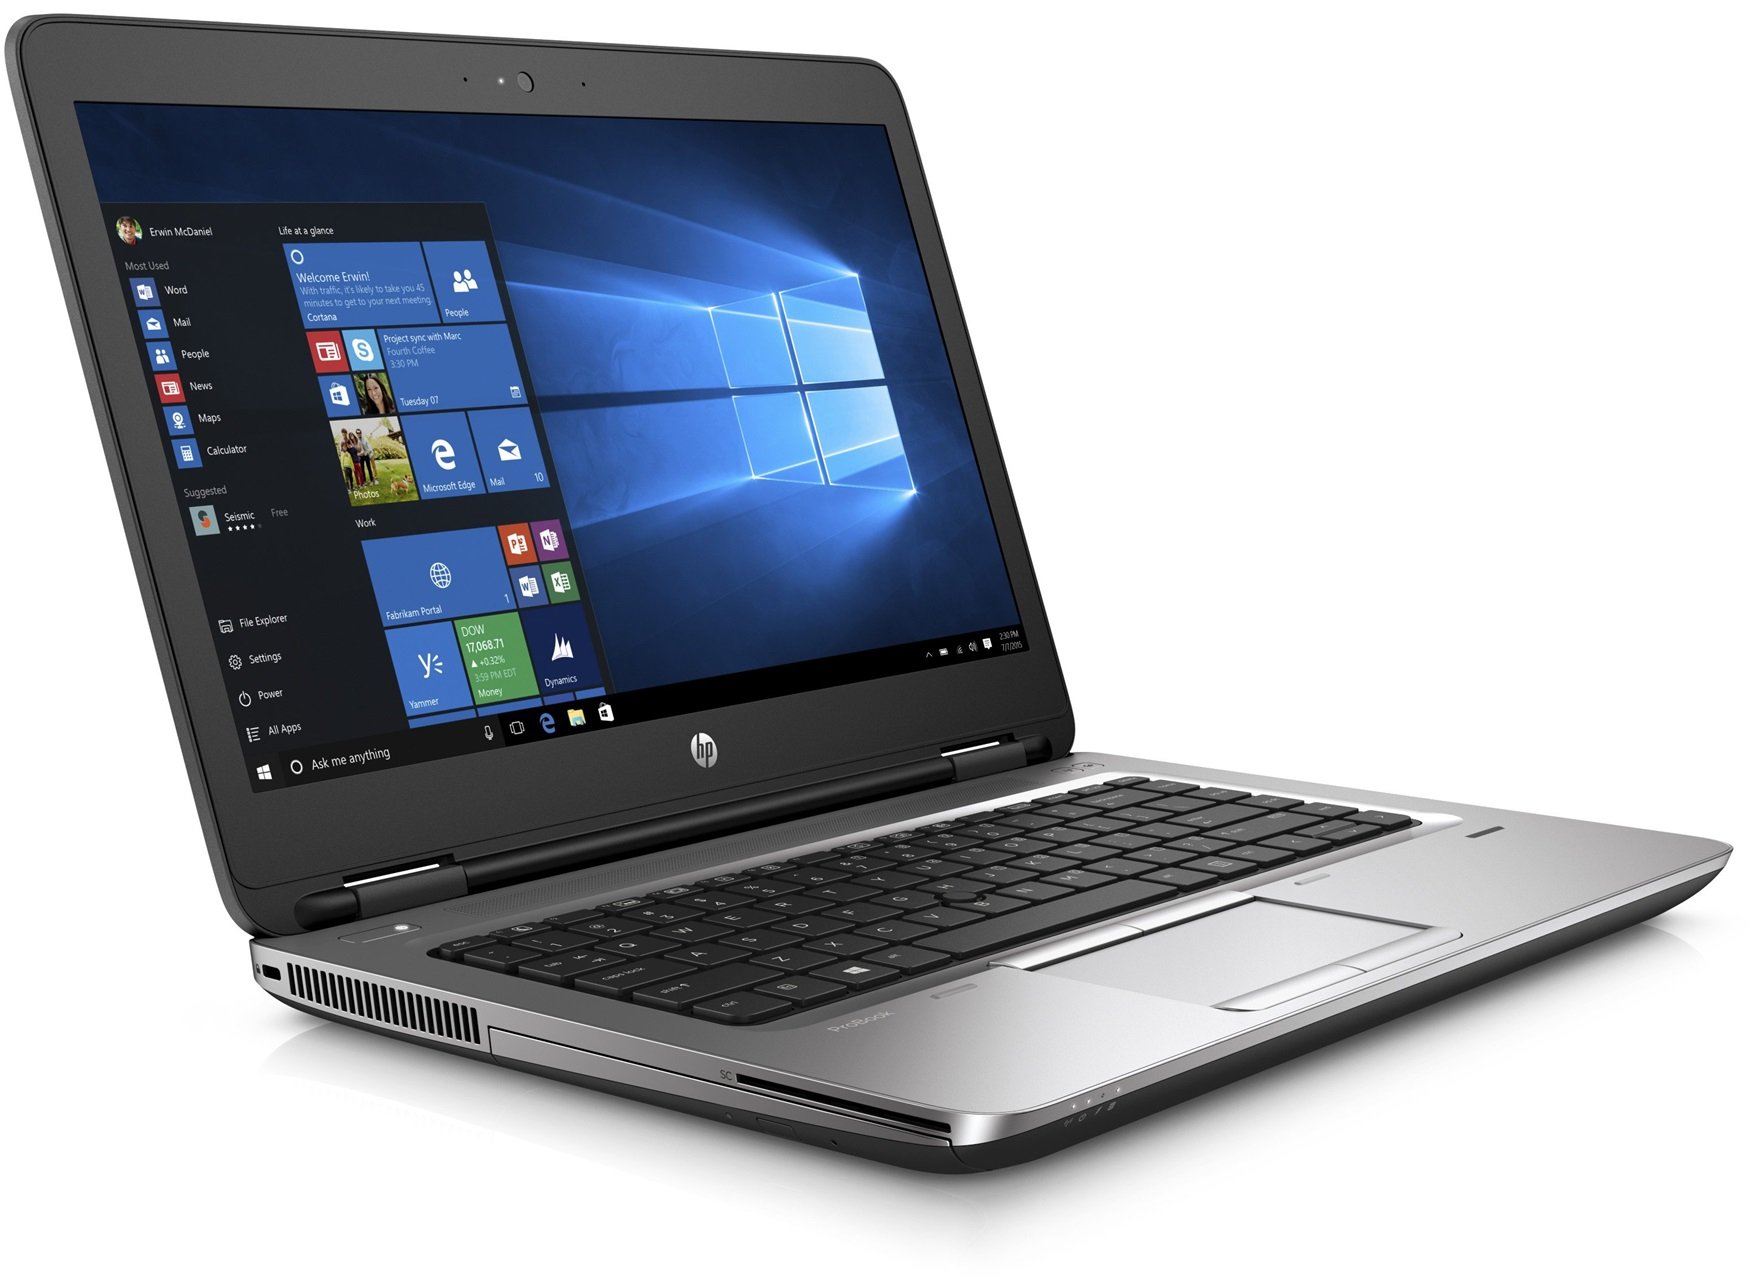 Portátil HP Probook 645 G2 GRADO B (AMD A8-8600B 1.6Ghz/8GB/240SSD/NO-DVD/14/W7P) Preinstalado